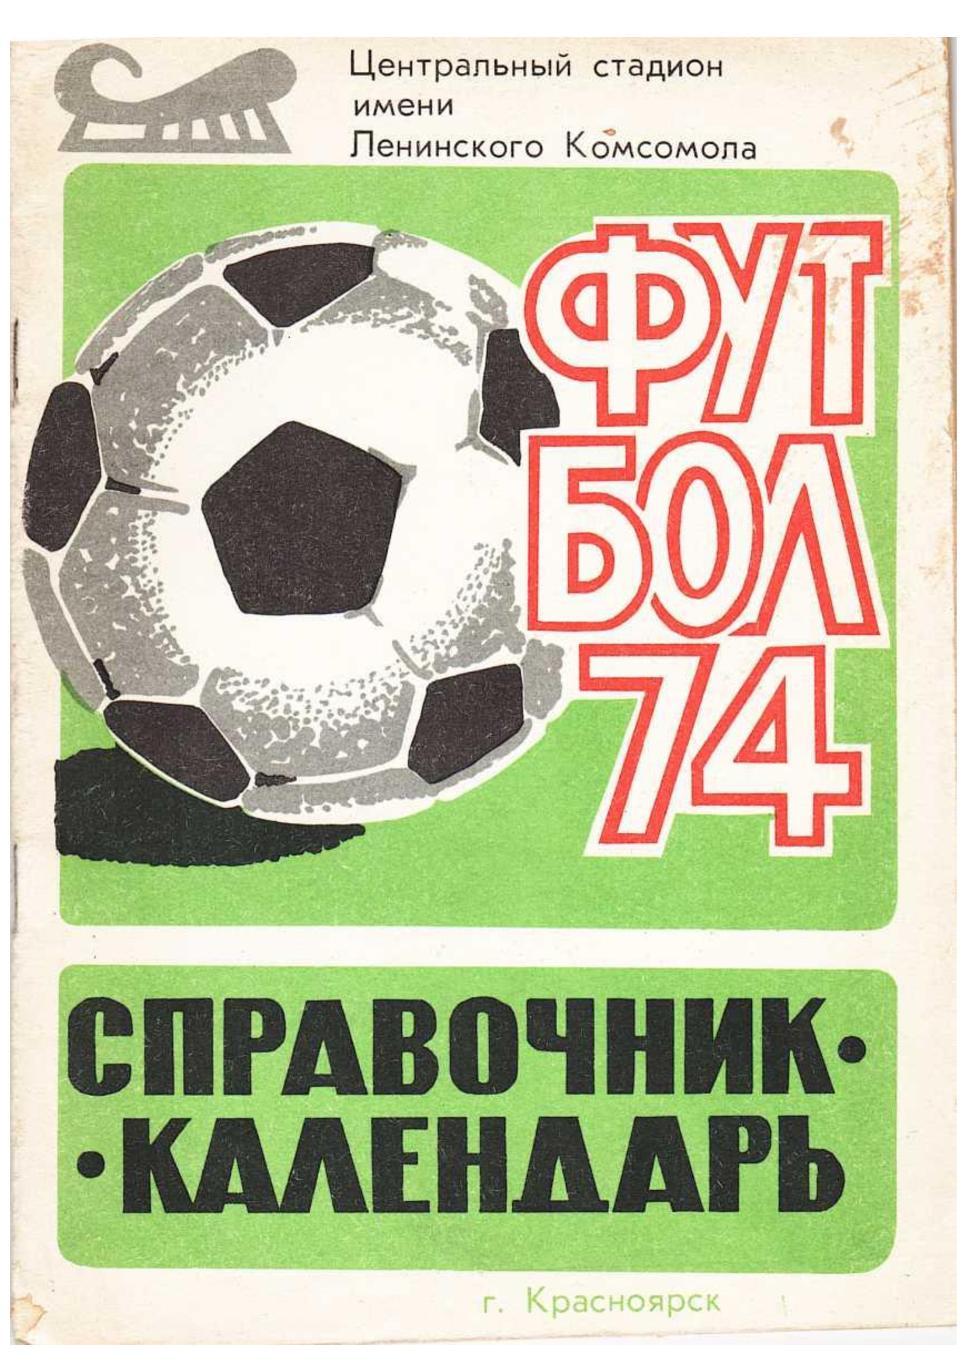 Футбол 74. Справочник-календарь. Красноярск 1974.